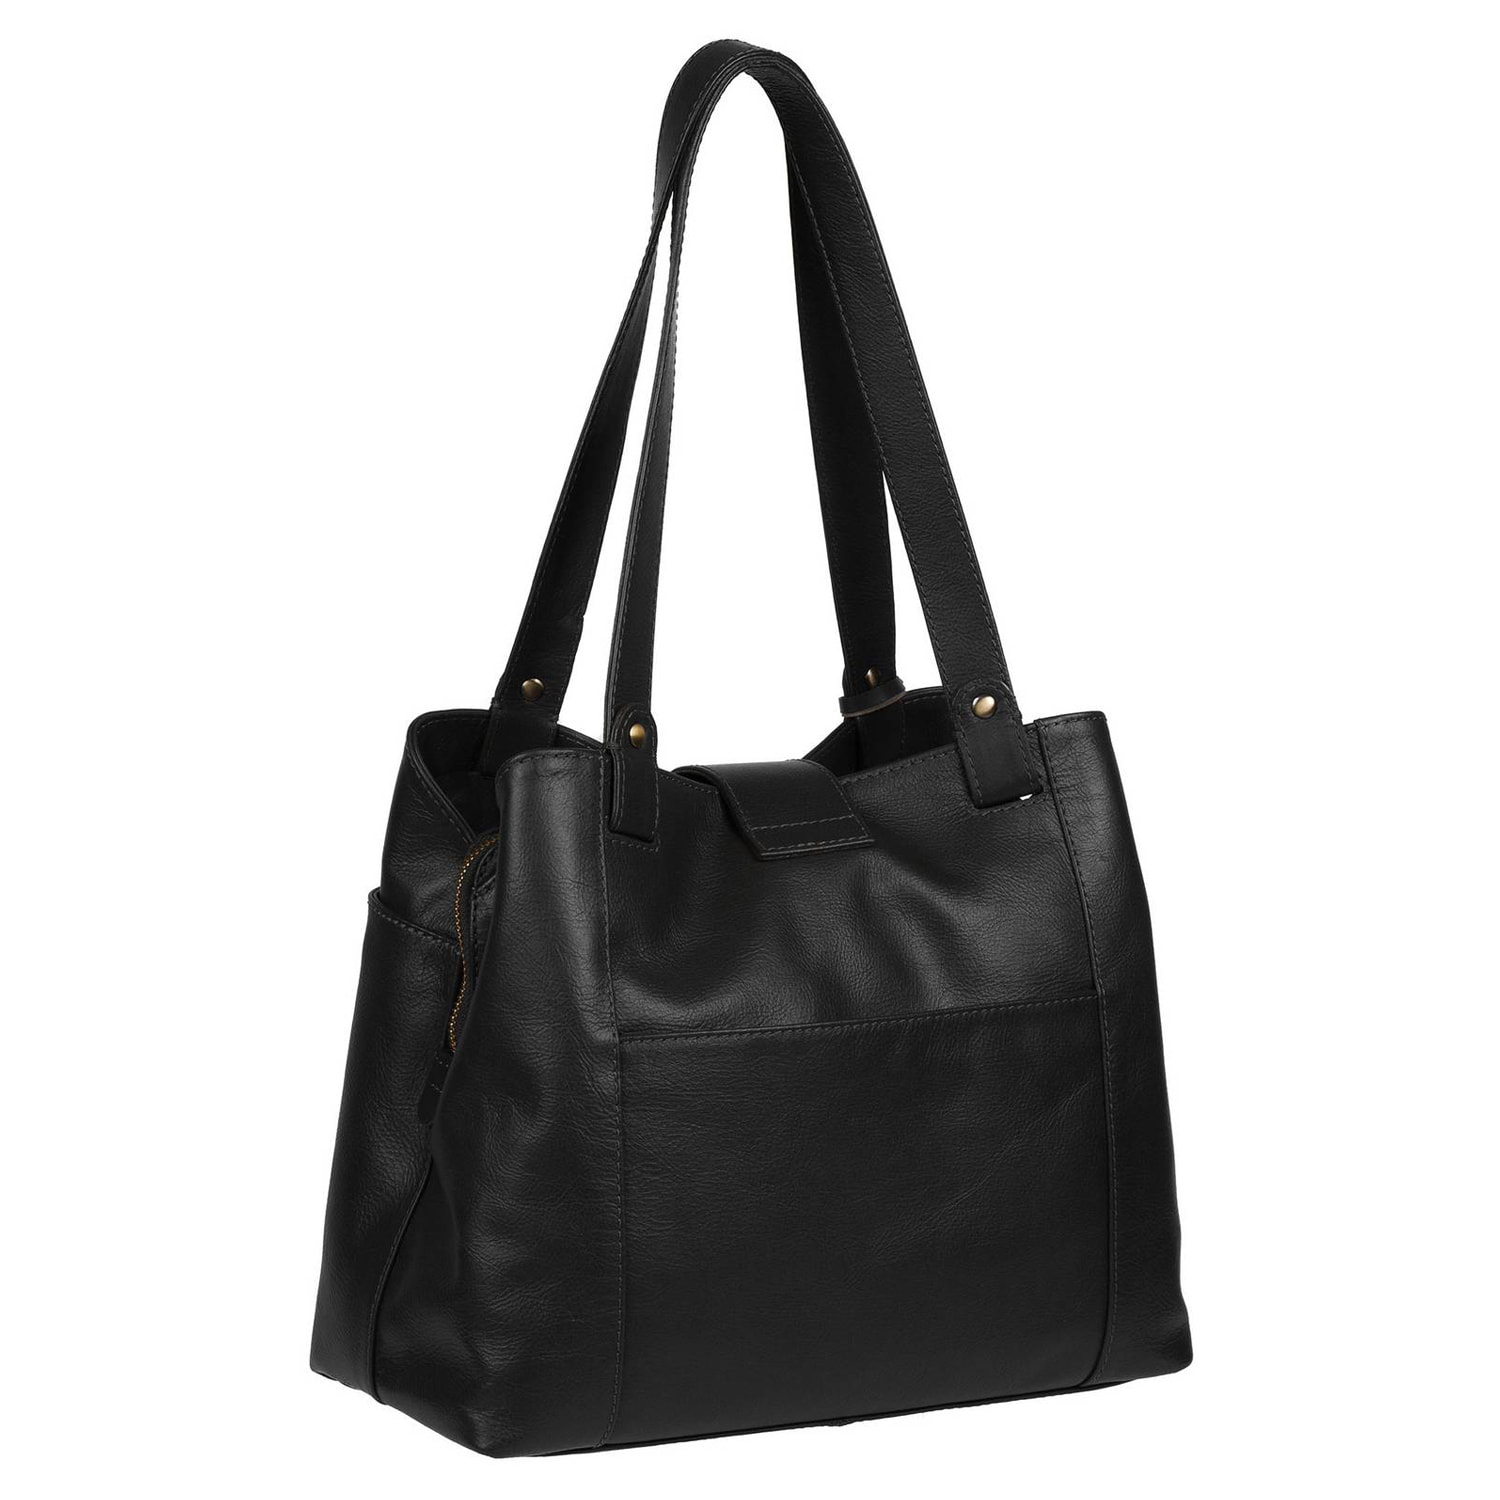 Black Leather Handbag, Shoulder Bag